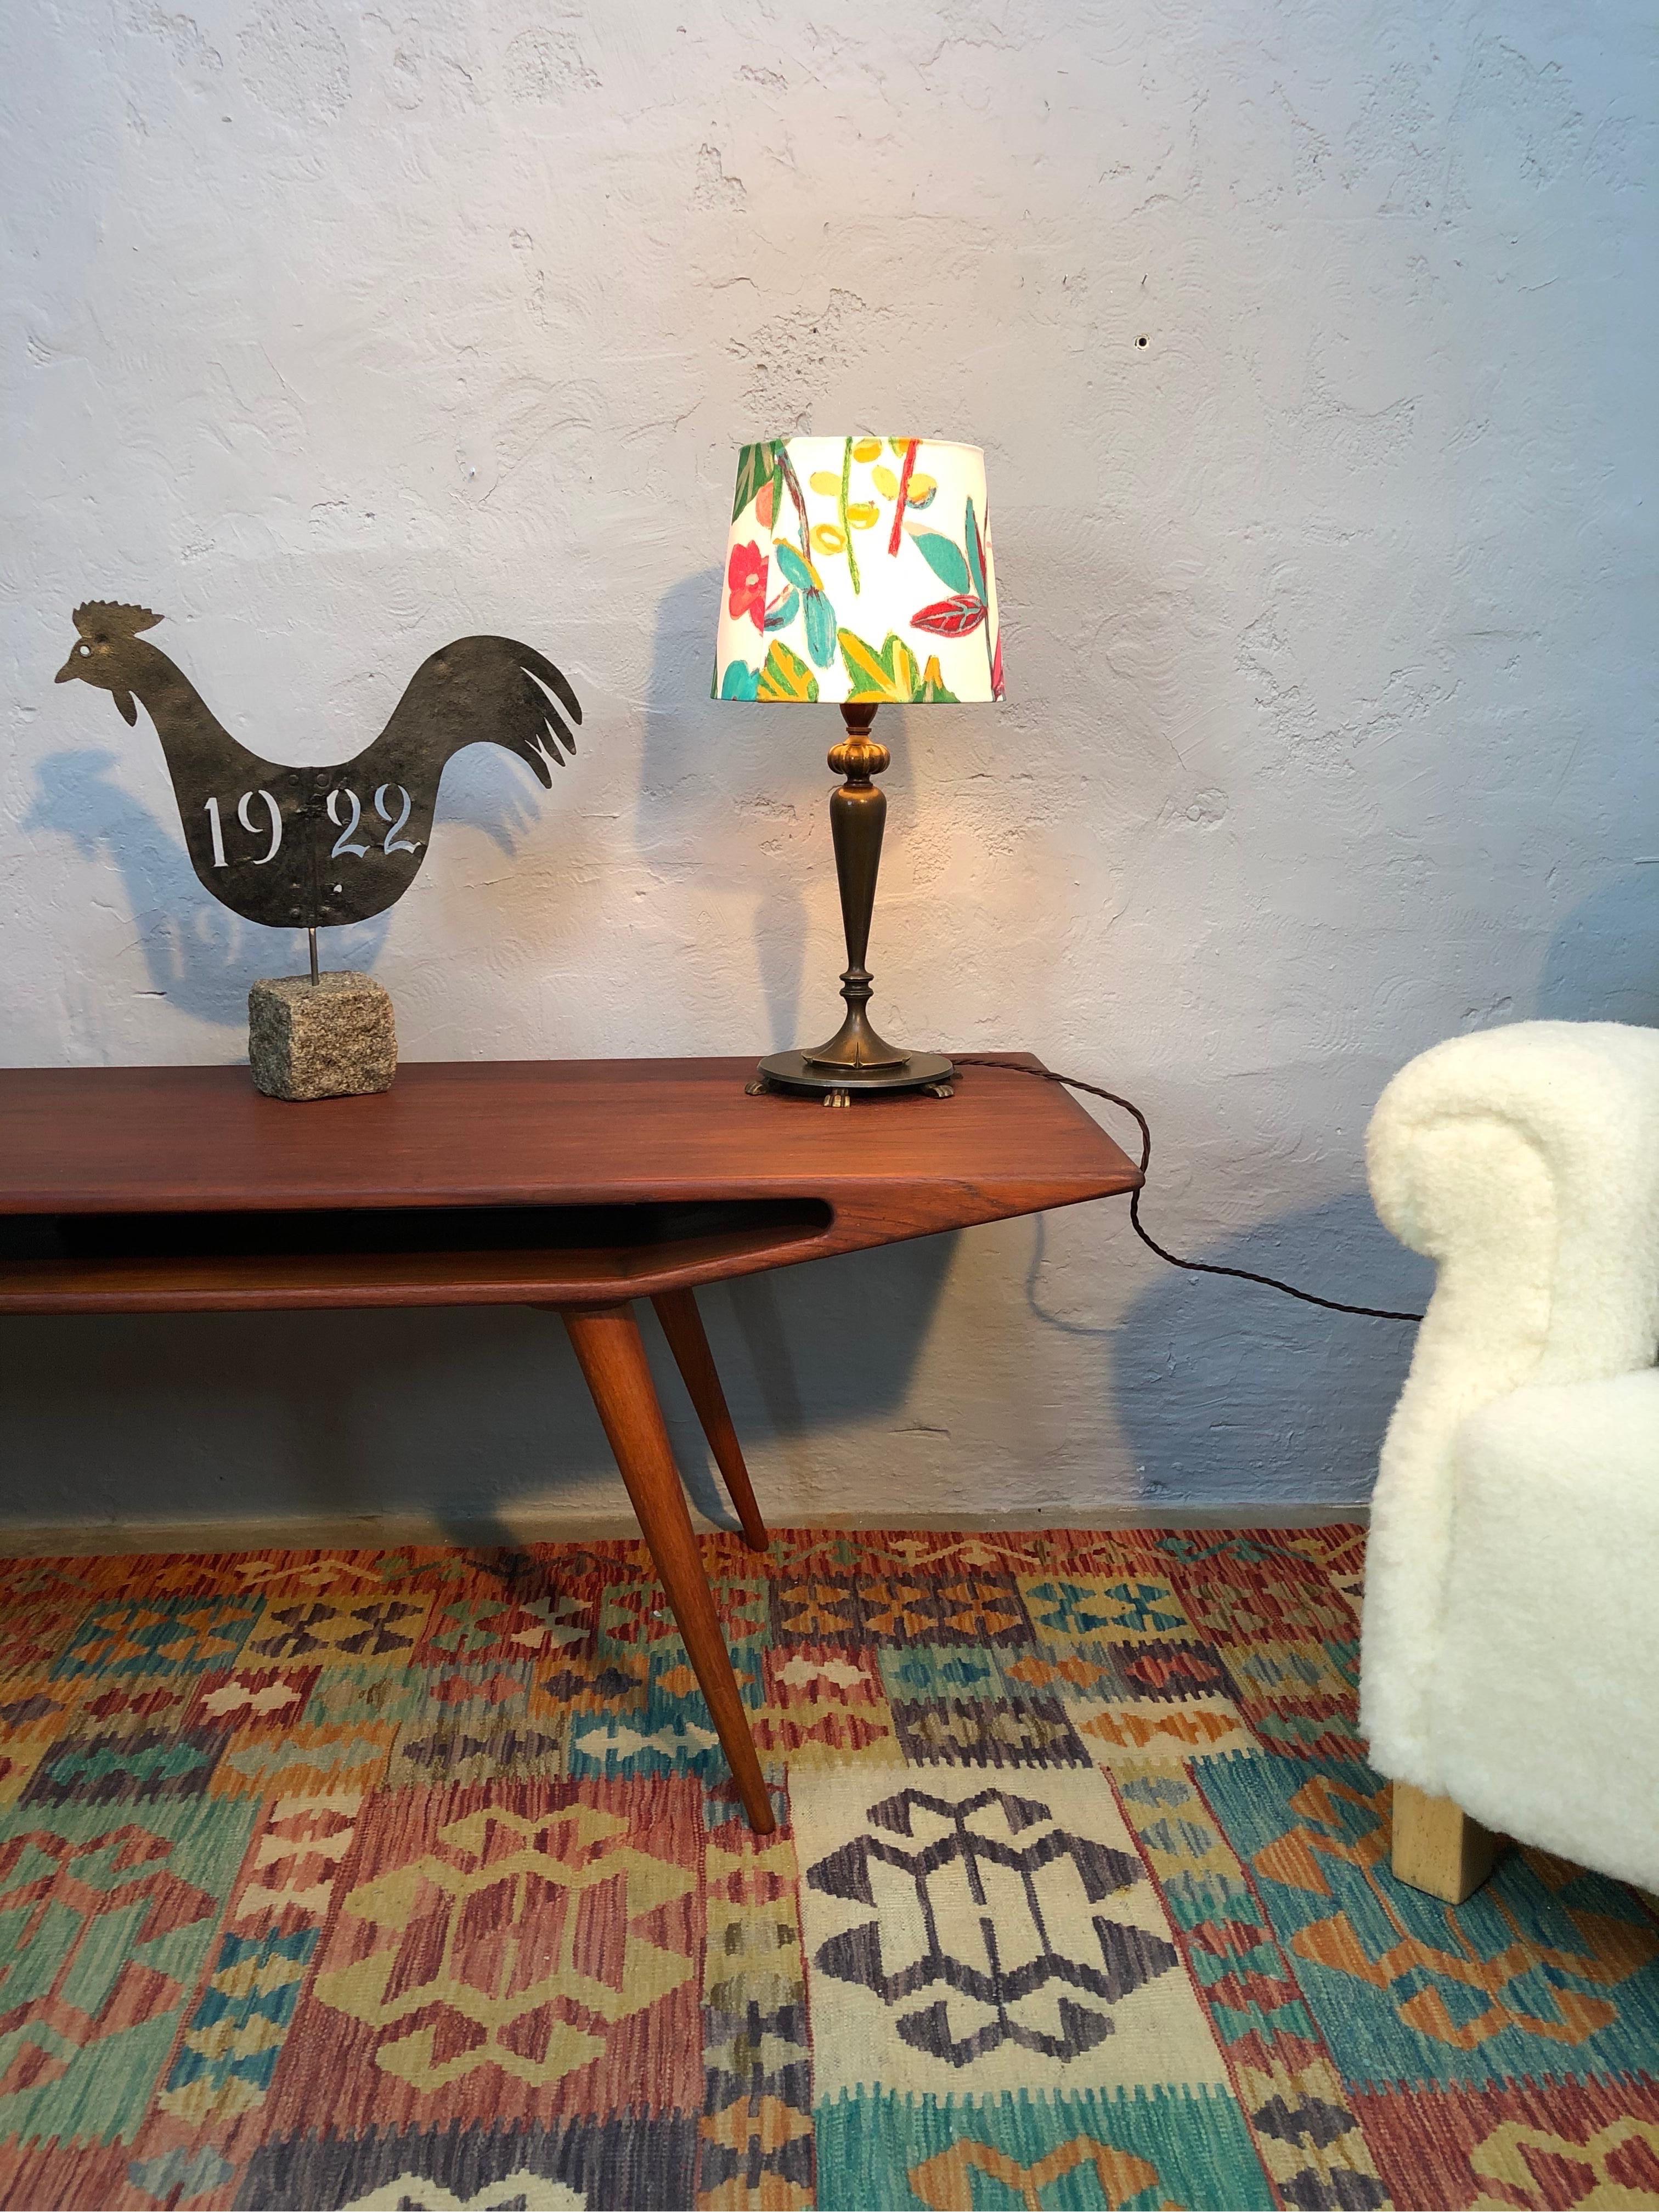 Lampe de table Art Déco élégante avec un beau design d'époque.
En laiton moulé et reposant sur six pieds griffus. 
Jolie couleur du laiton.
Grande qualité typique de l'époque.
Recâblé avec un flex en tissu torsadé marron et mis à la